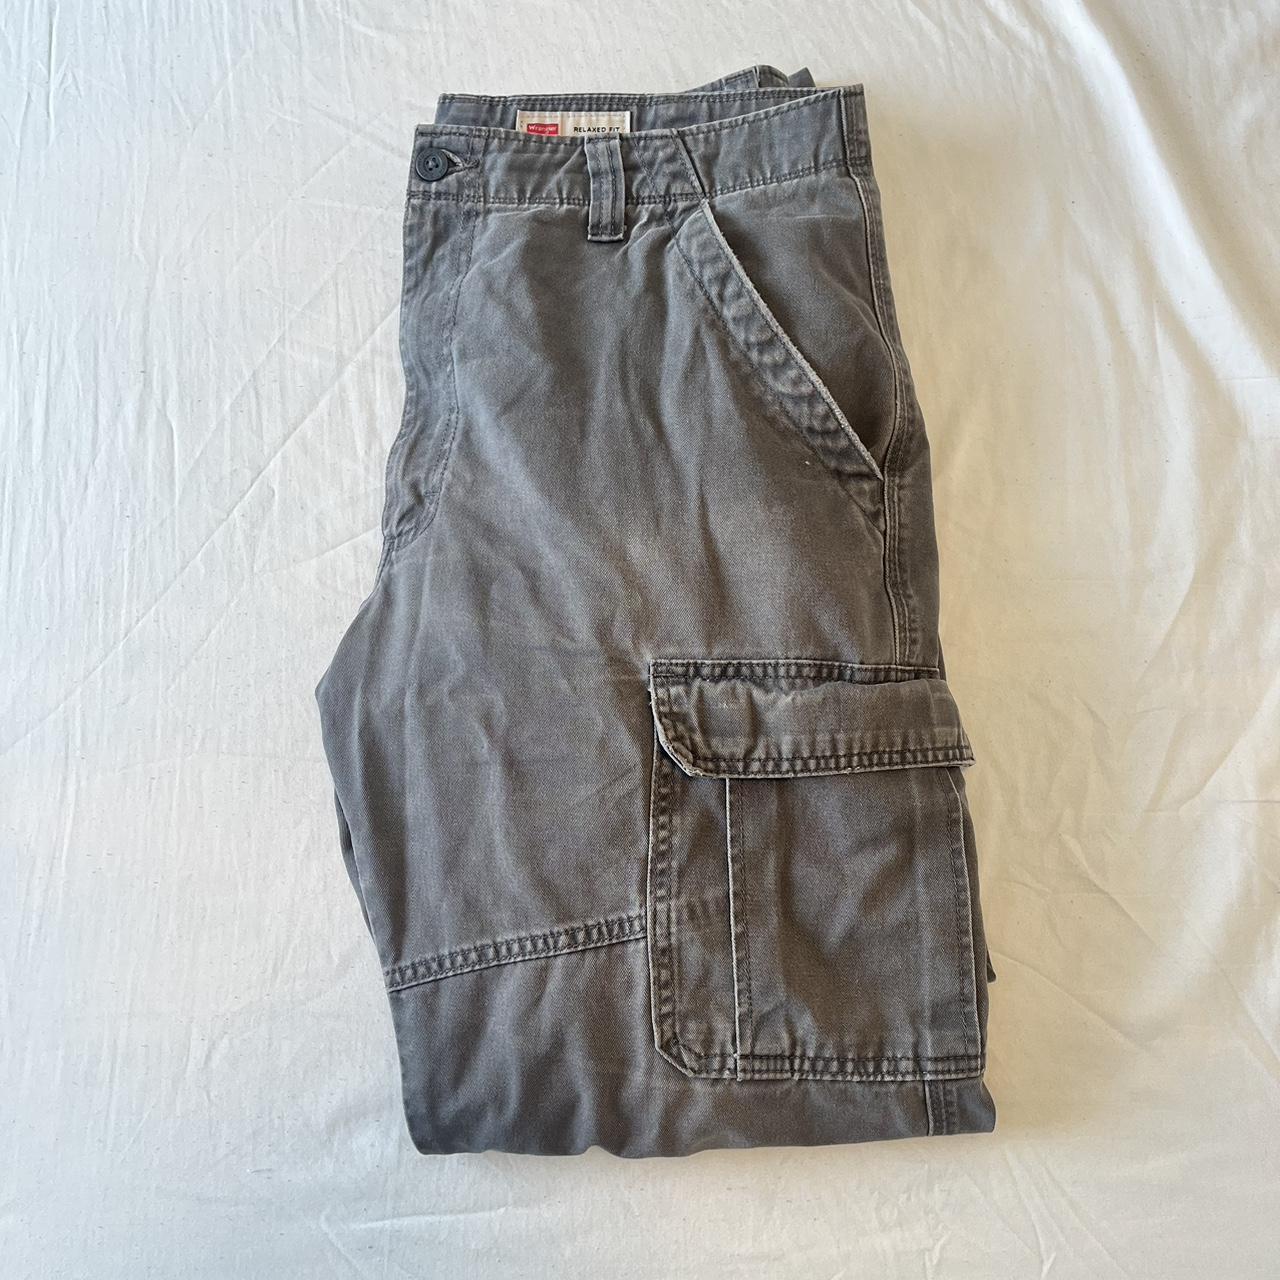 Vintage Wrangler Carhartt Cargo Pants Washed... - Depop